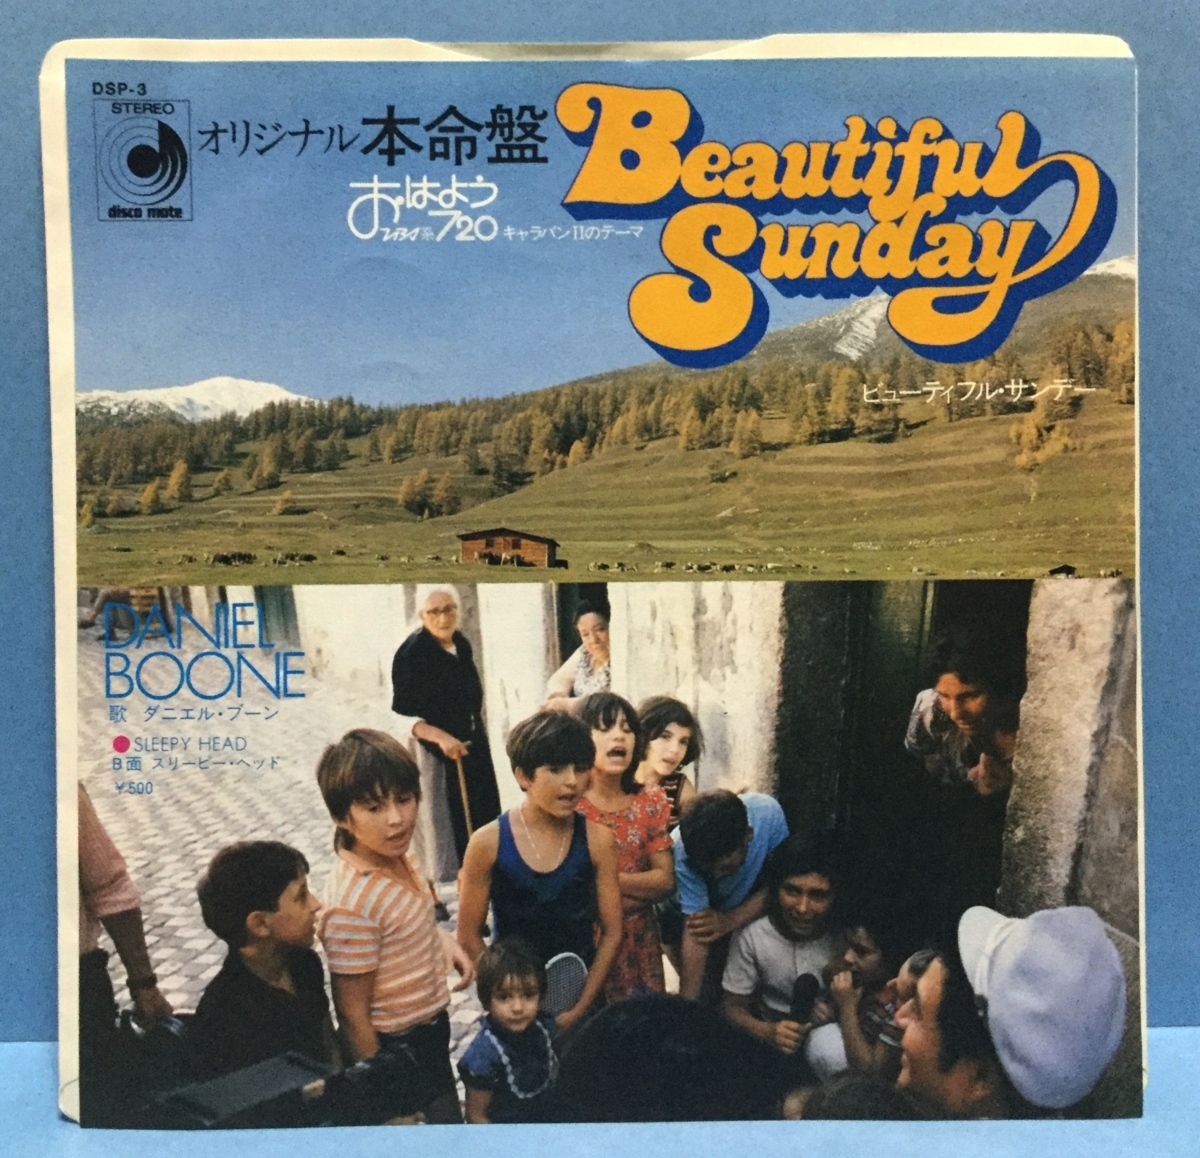 全店販売中 EP 洋楽 Daniel Boone Beautiful Sunday 日本盤 b www.bahan.org.il